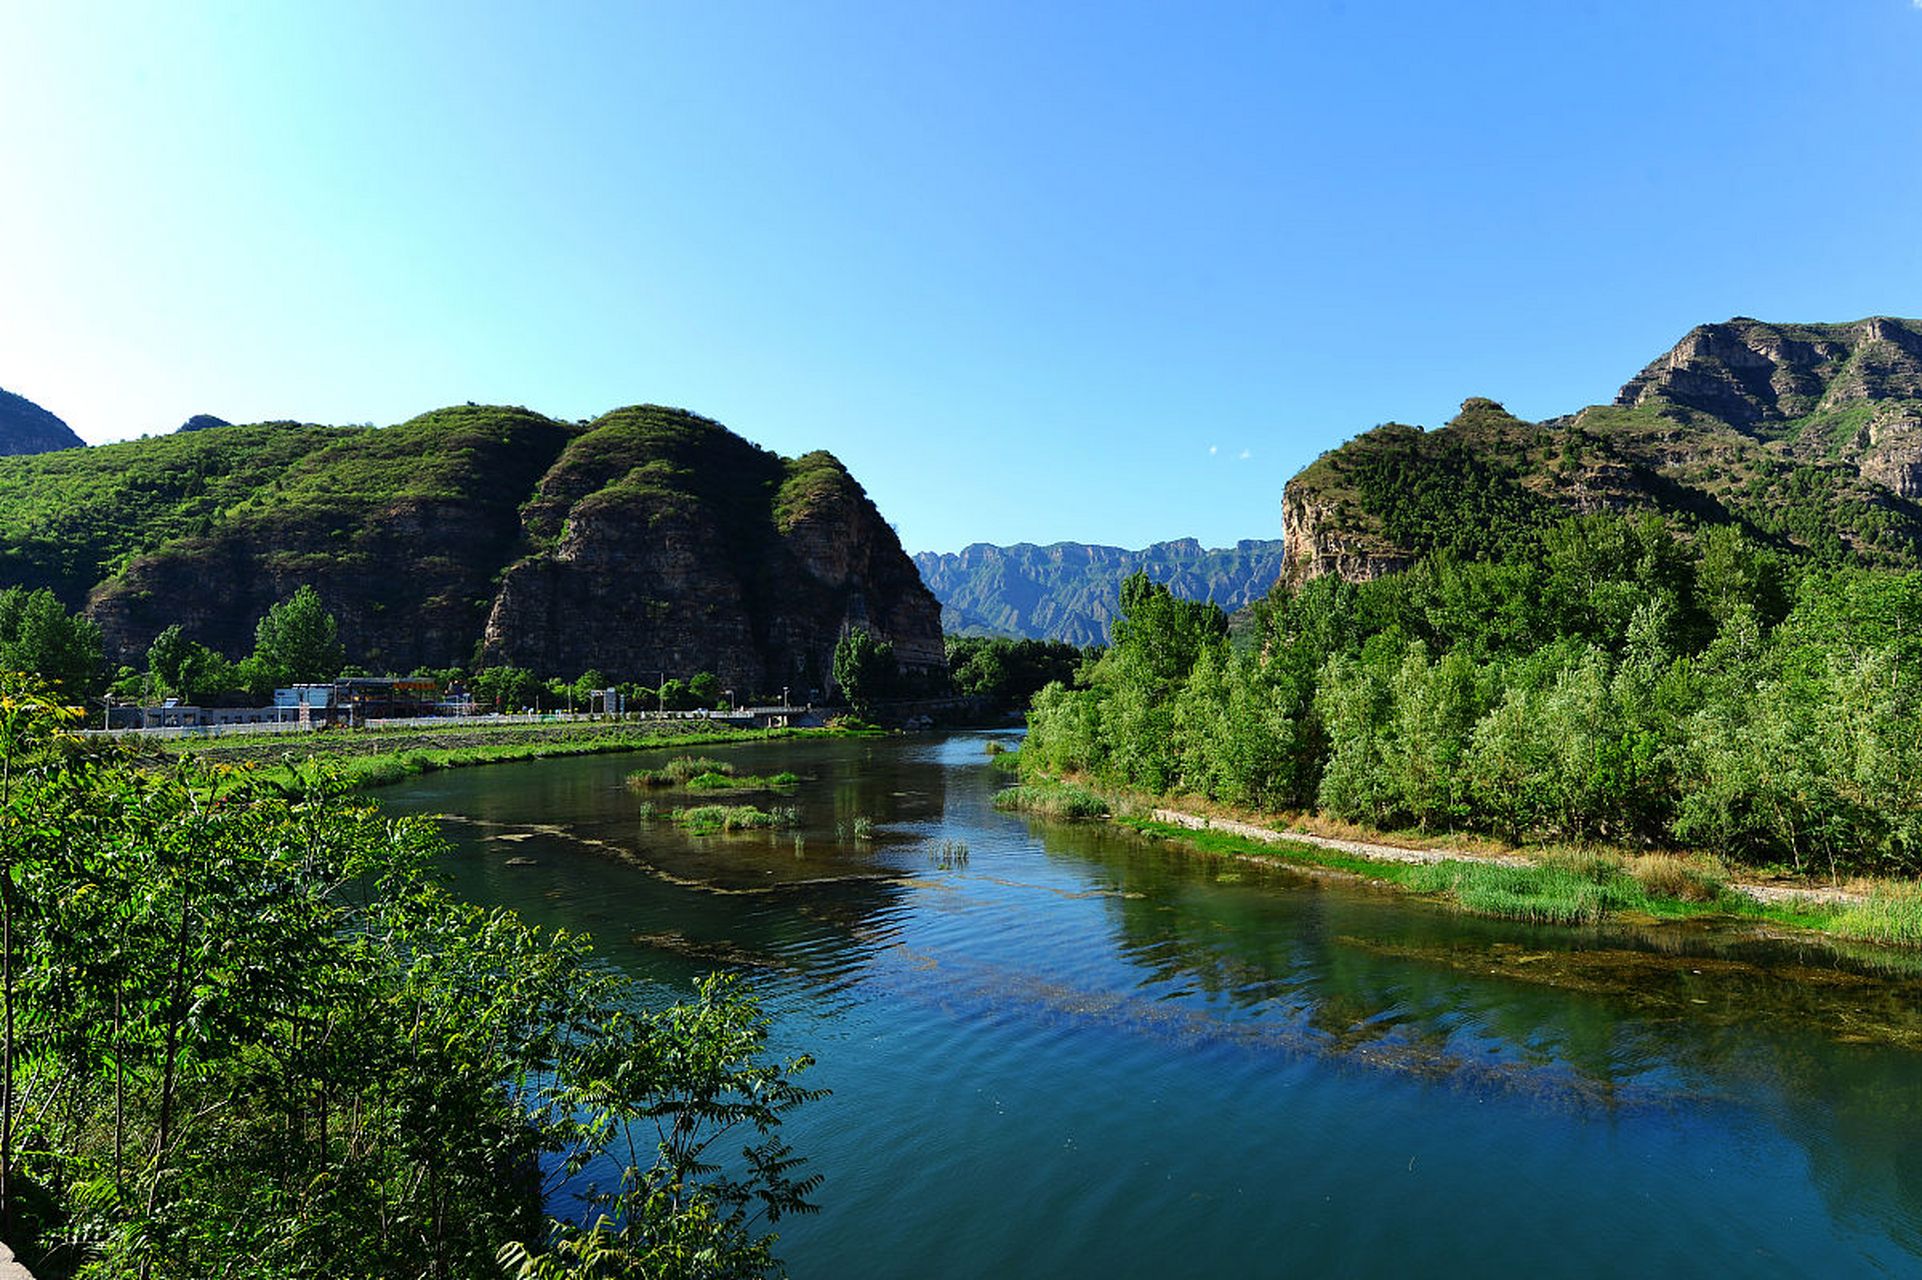 野三坡风景区是一个集山,水,林,洞,峡,瀑于一体的自然风光旅游胜地